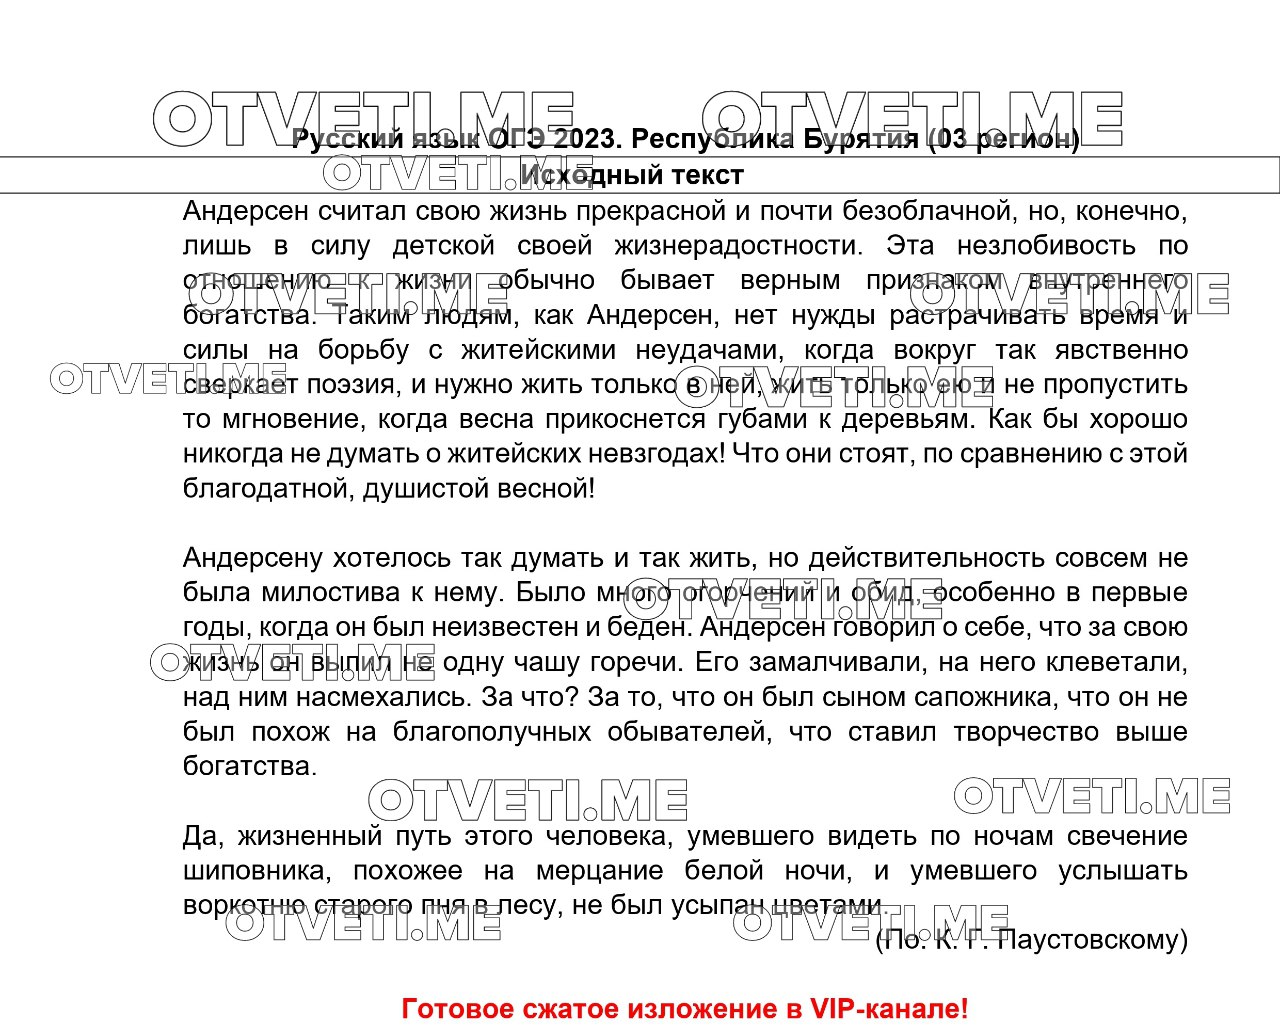 Телеграмм ответы на огэ по русскому языку фото 24